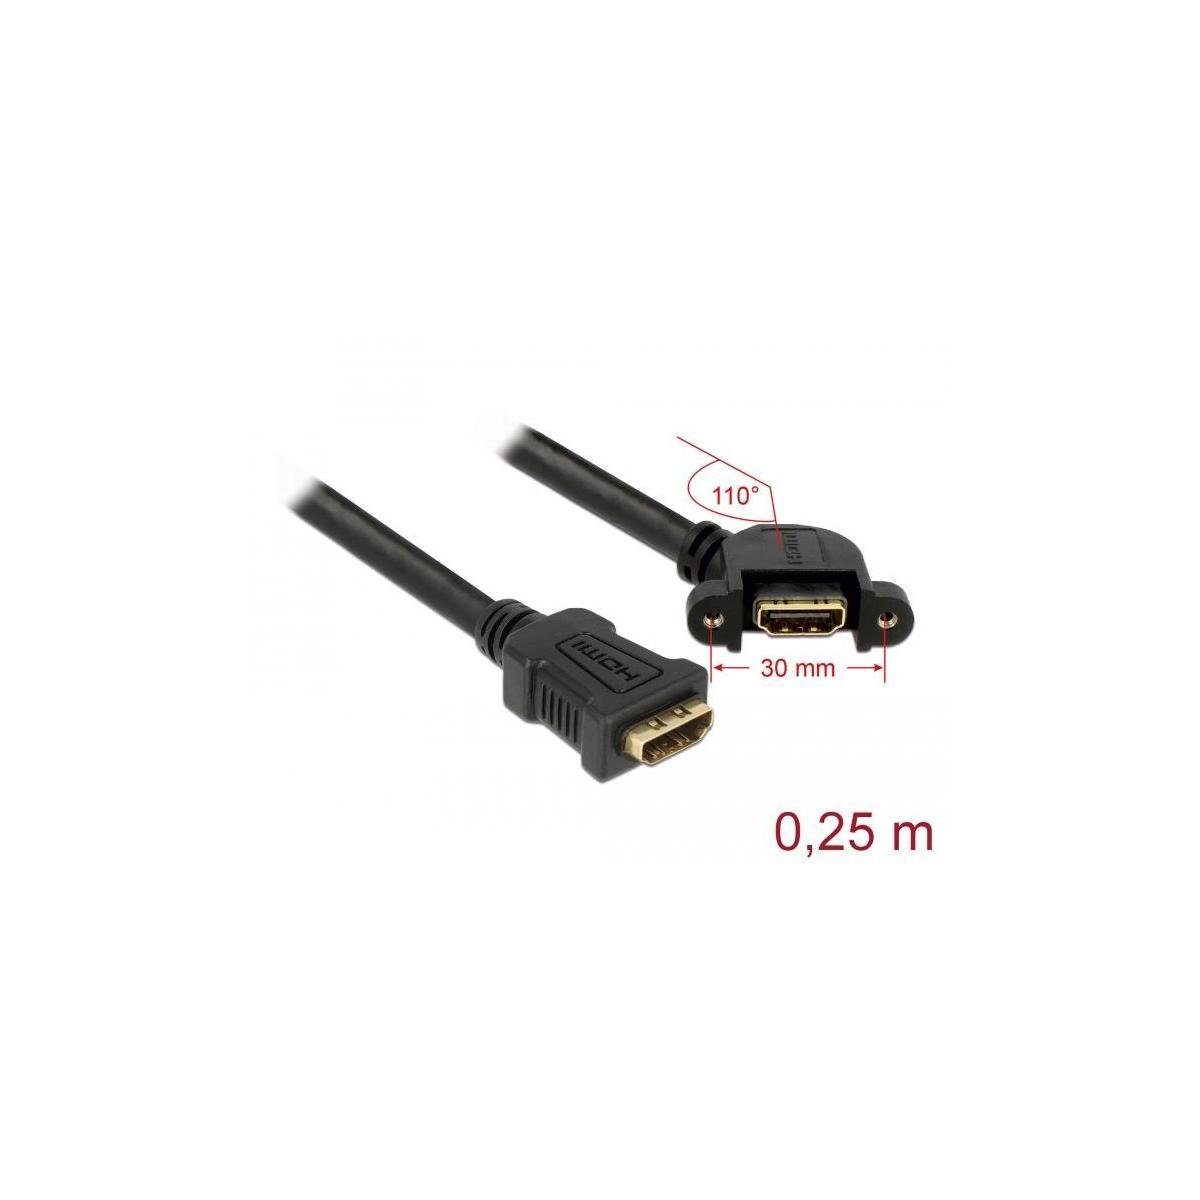 HDMI, Einbau HDMI Buchse > Computer-Kabel, A HDMI 110°... Delock zum Kabel HDMI A Buchse